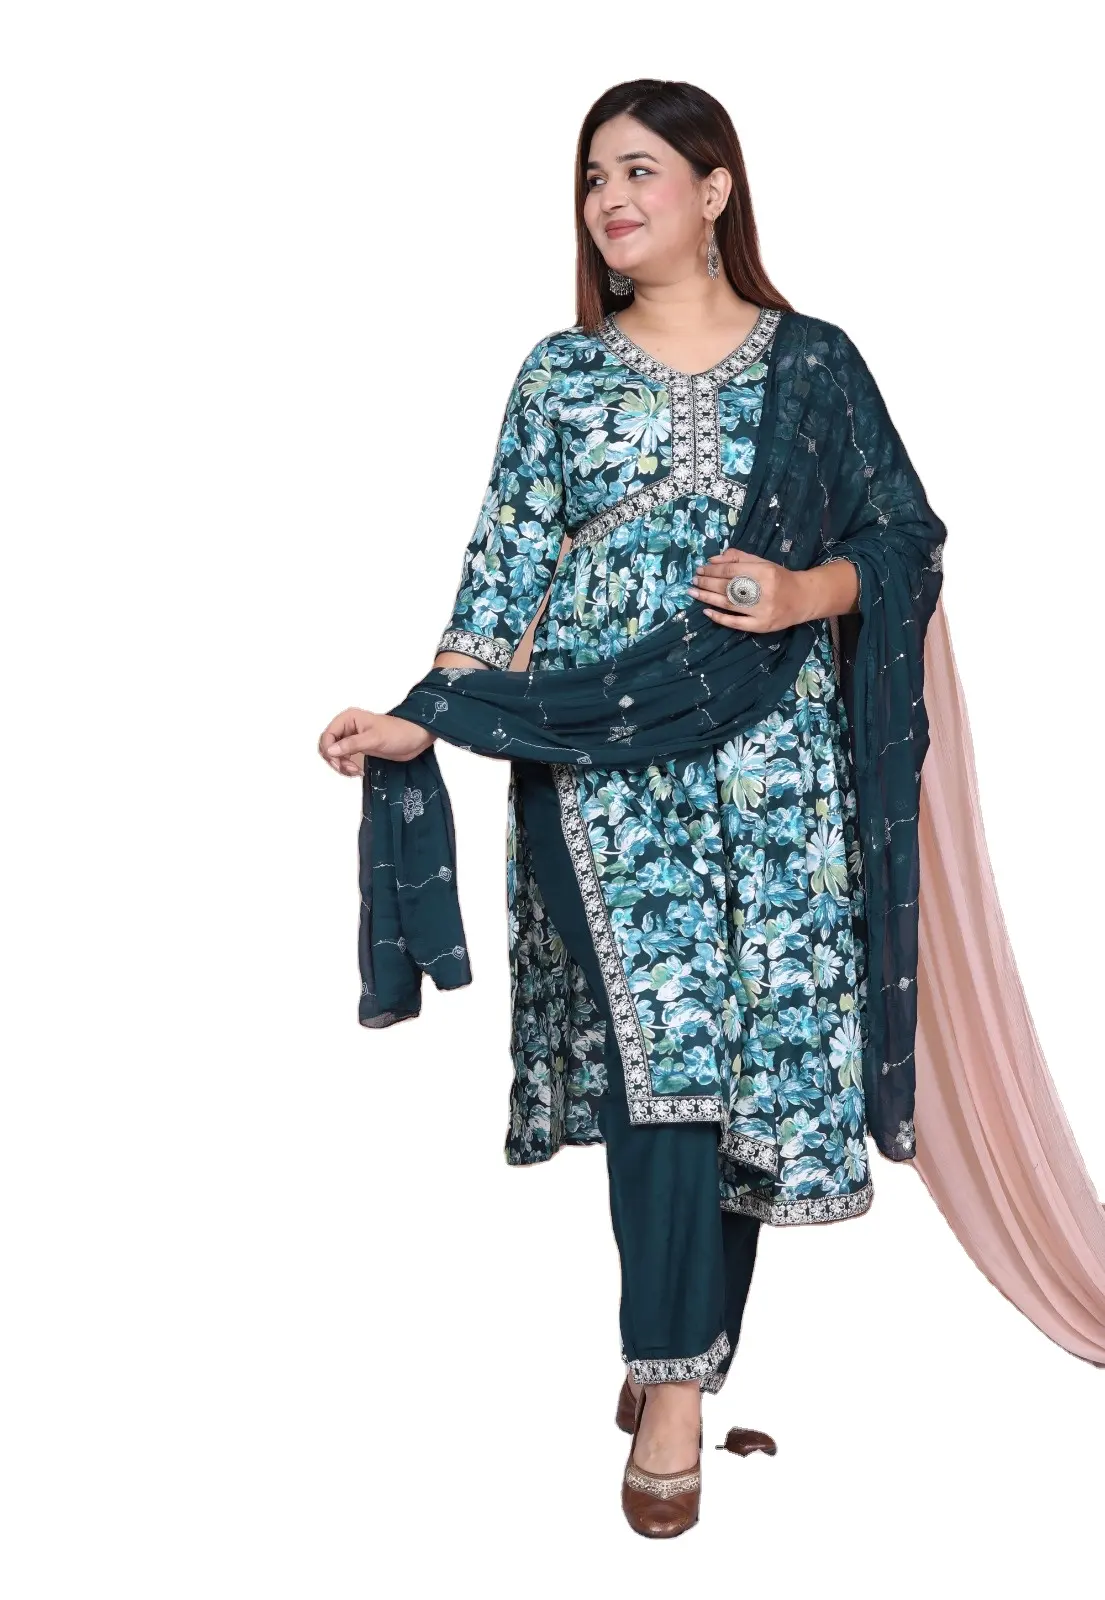 Индийская Женская коллекция, Женская хлопковая прямая курта с принтом, этническая одежда, оптовая цена, женская одежда ручной работы